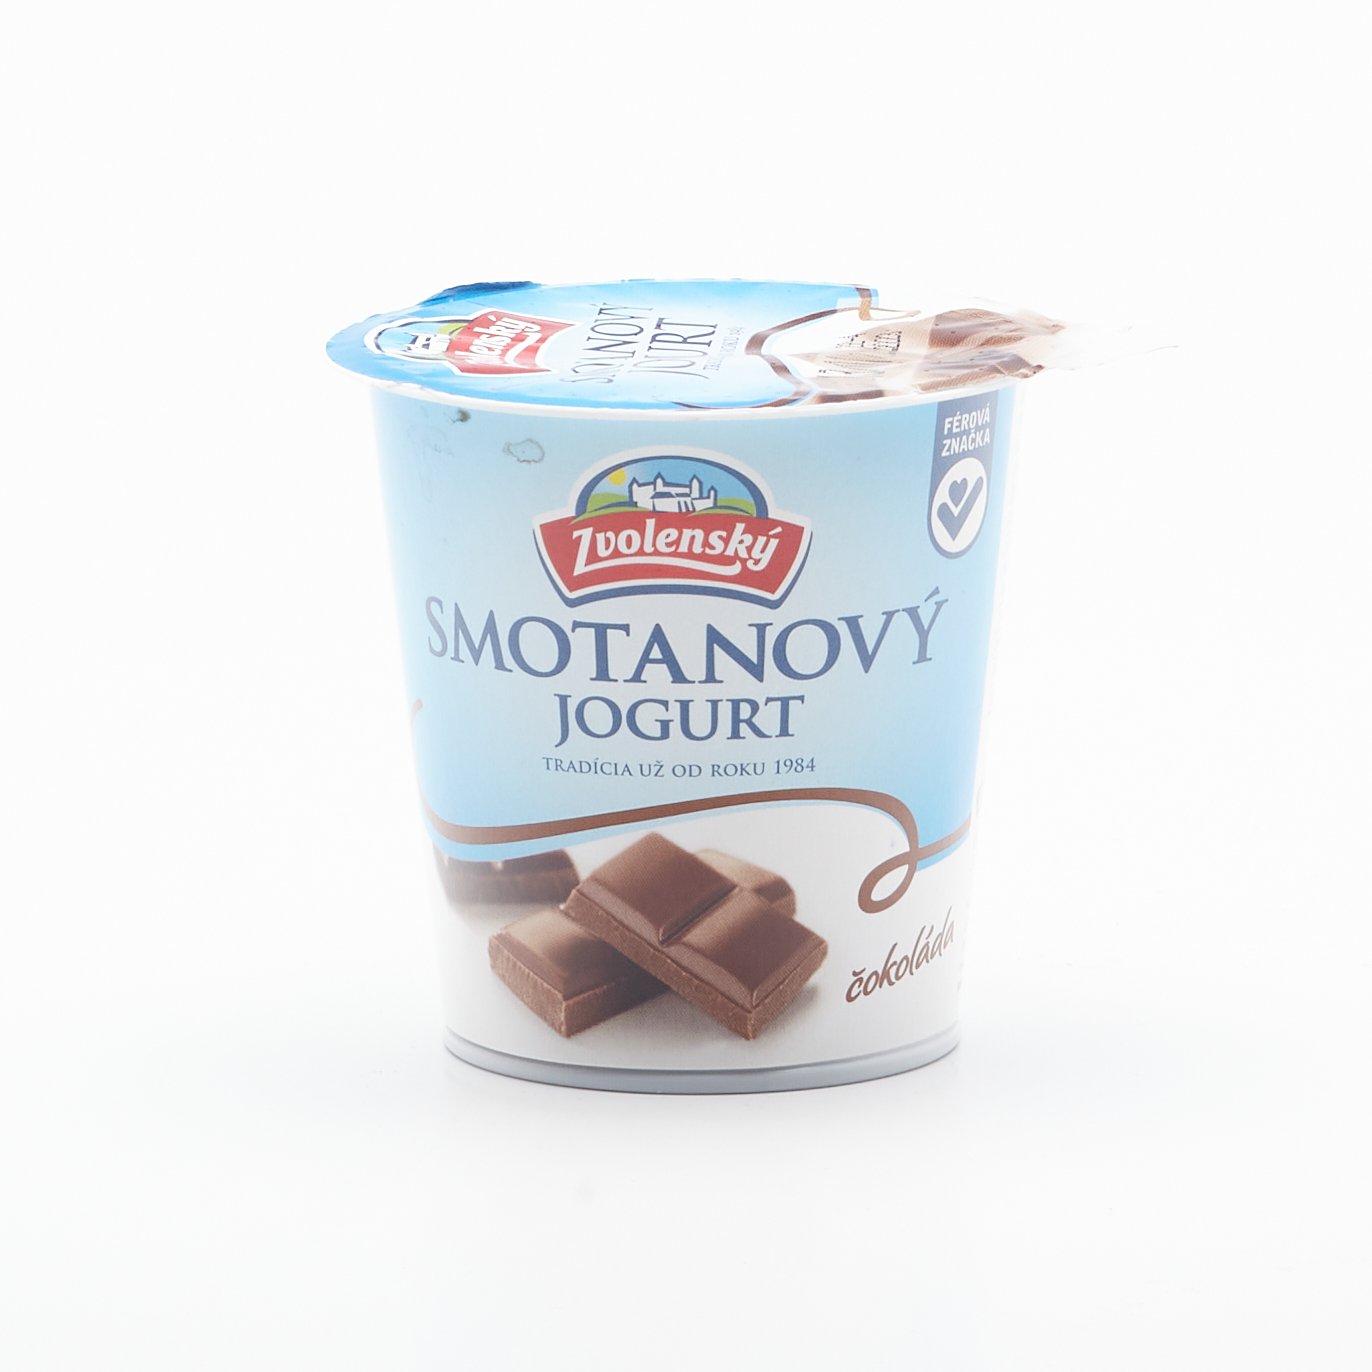 Zvolenský smotanový jogurt čokoláda 145g